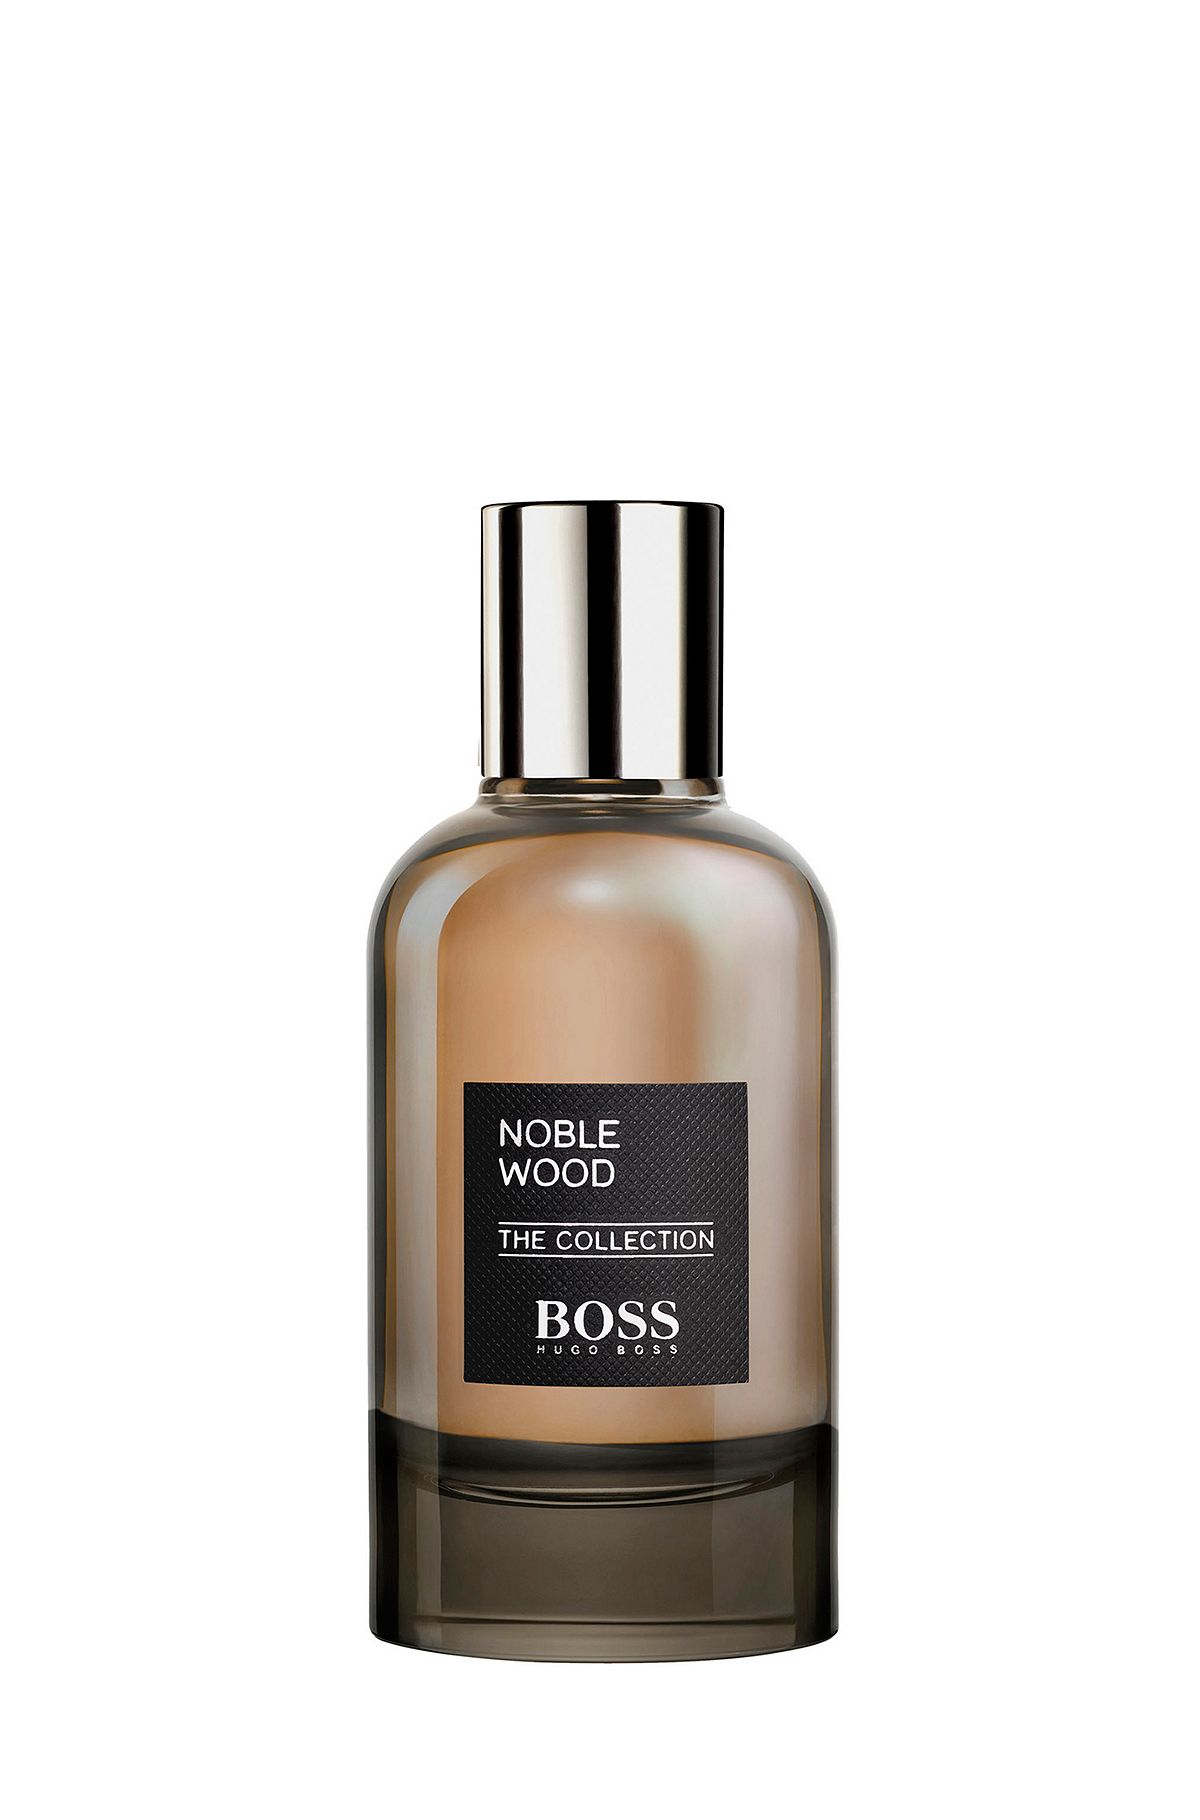 Eau de parfum BOSS The Collection Noble Wood 100 ml, Assorted-Pre-Pack